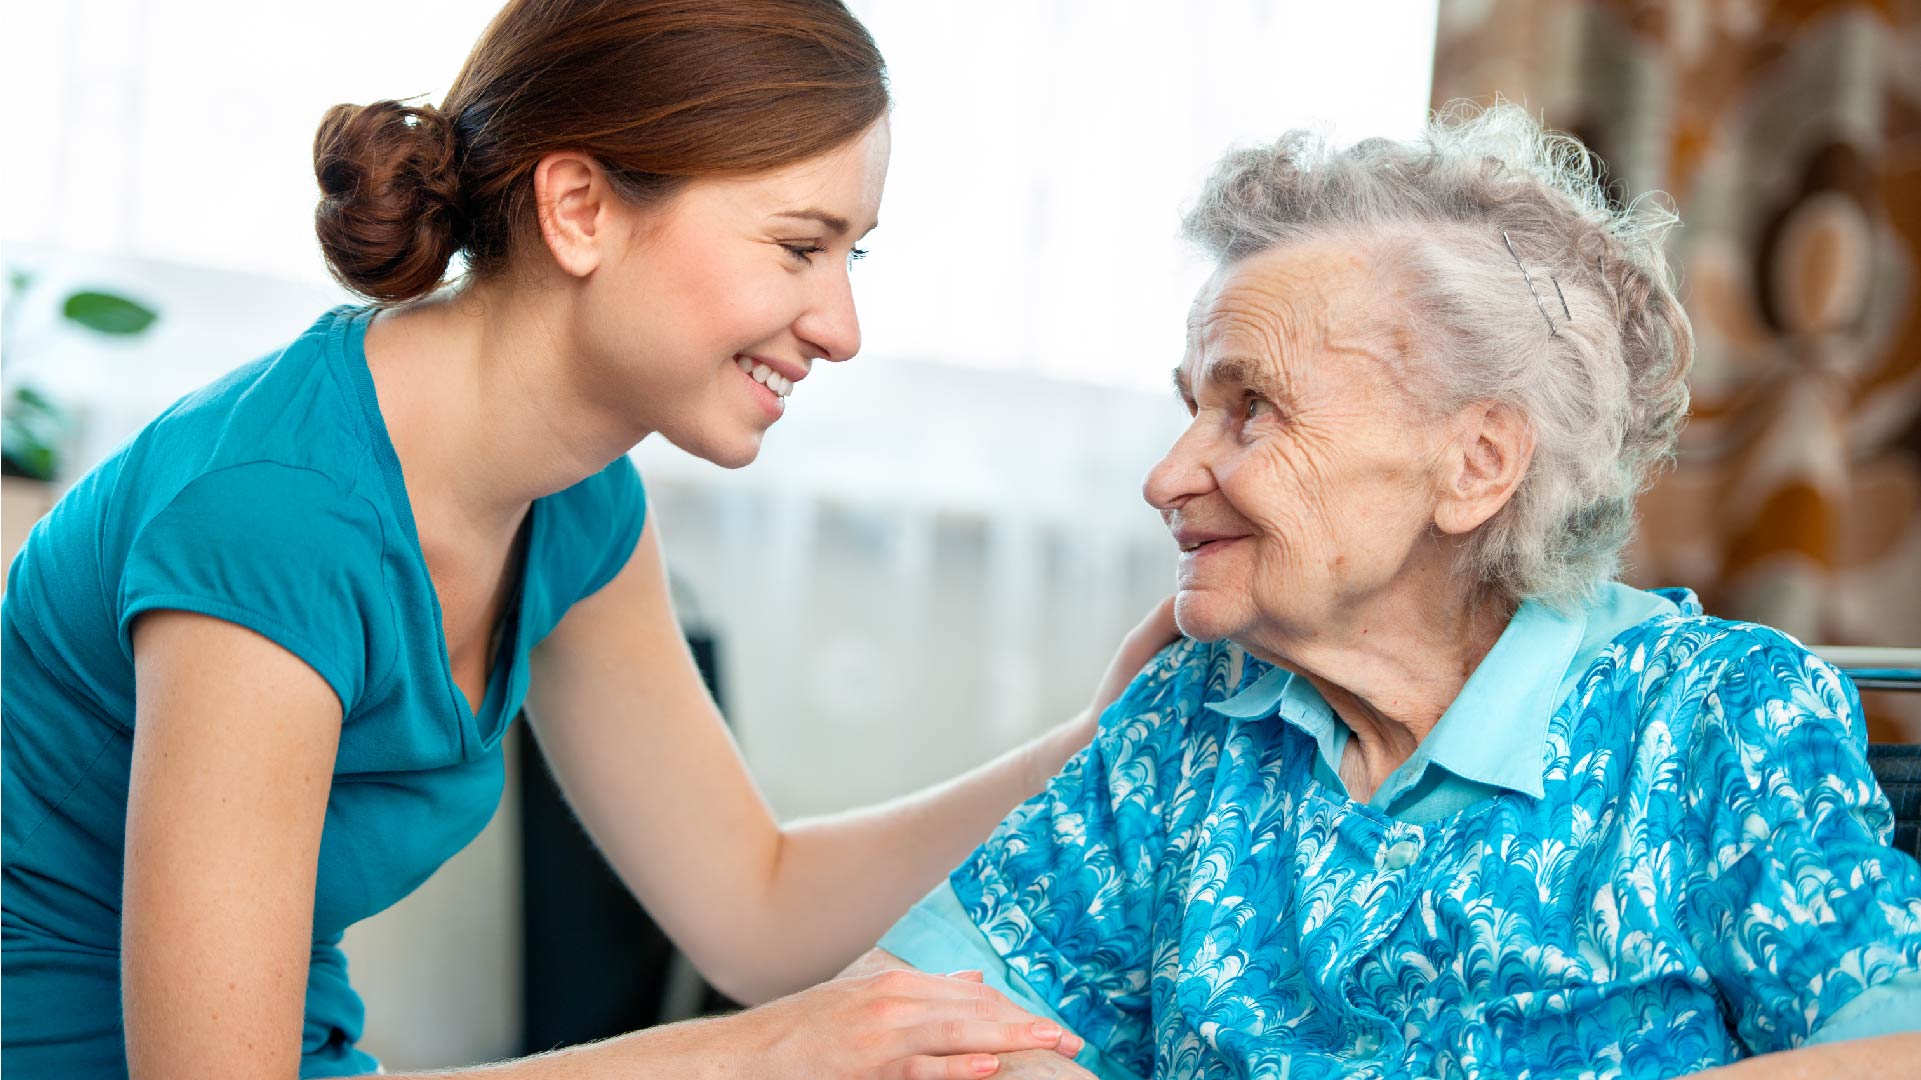 Une femme très âgée et sa soignante se sourient